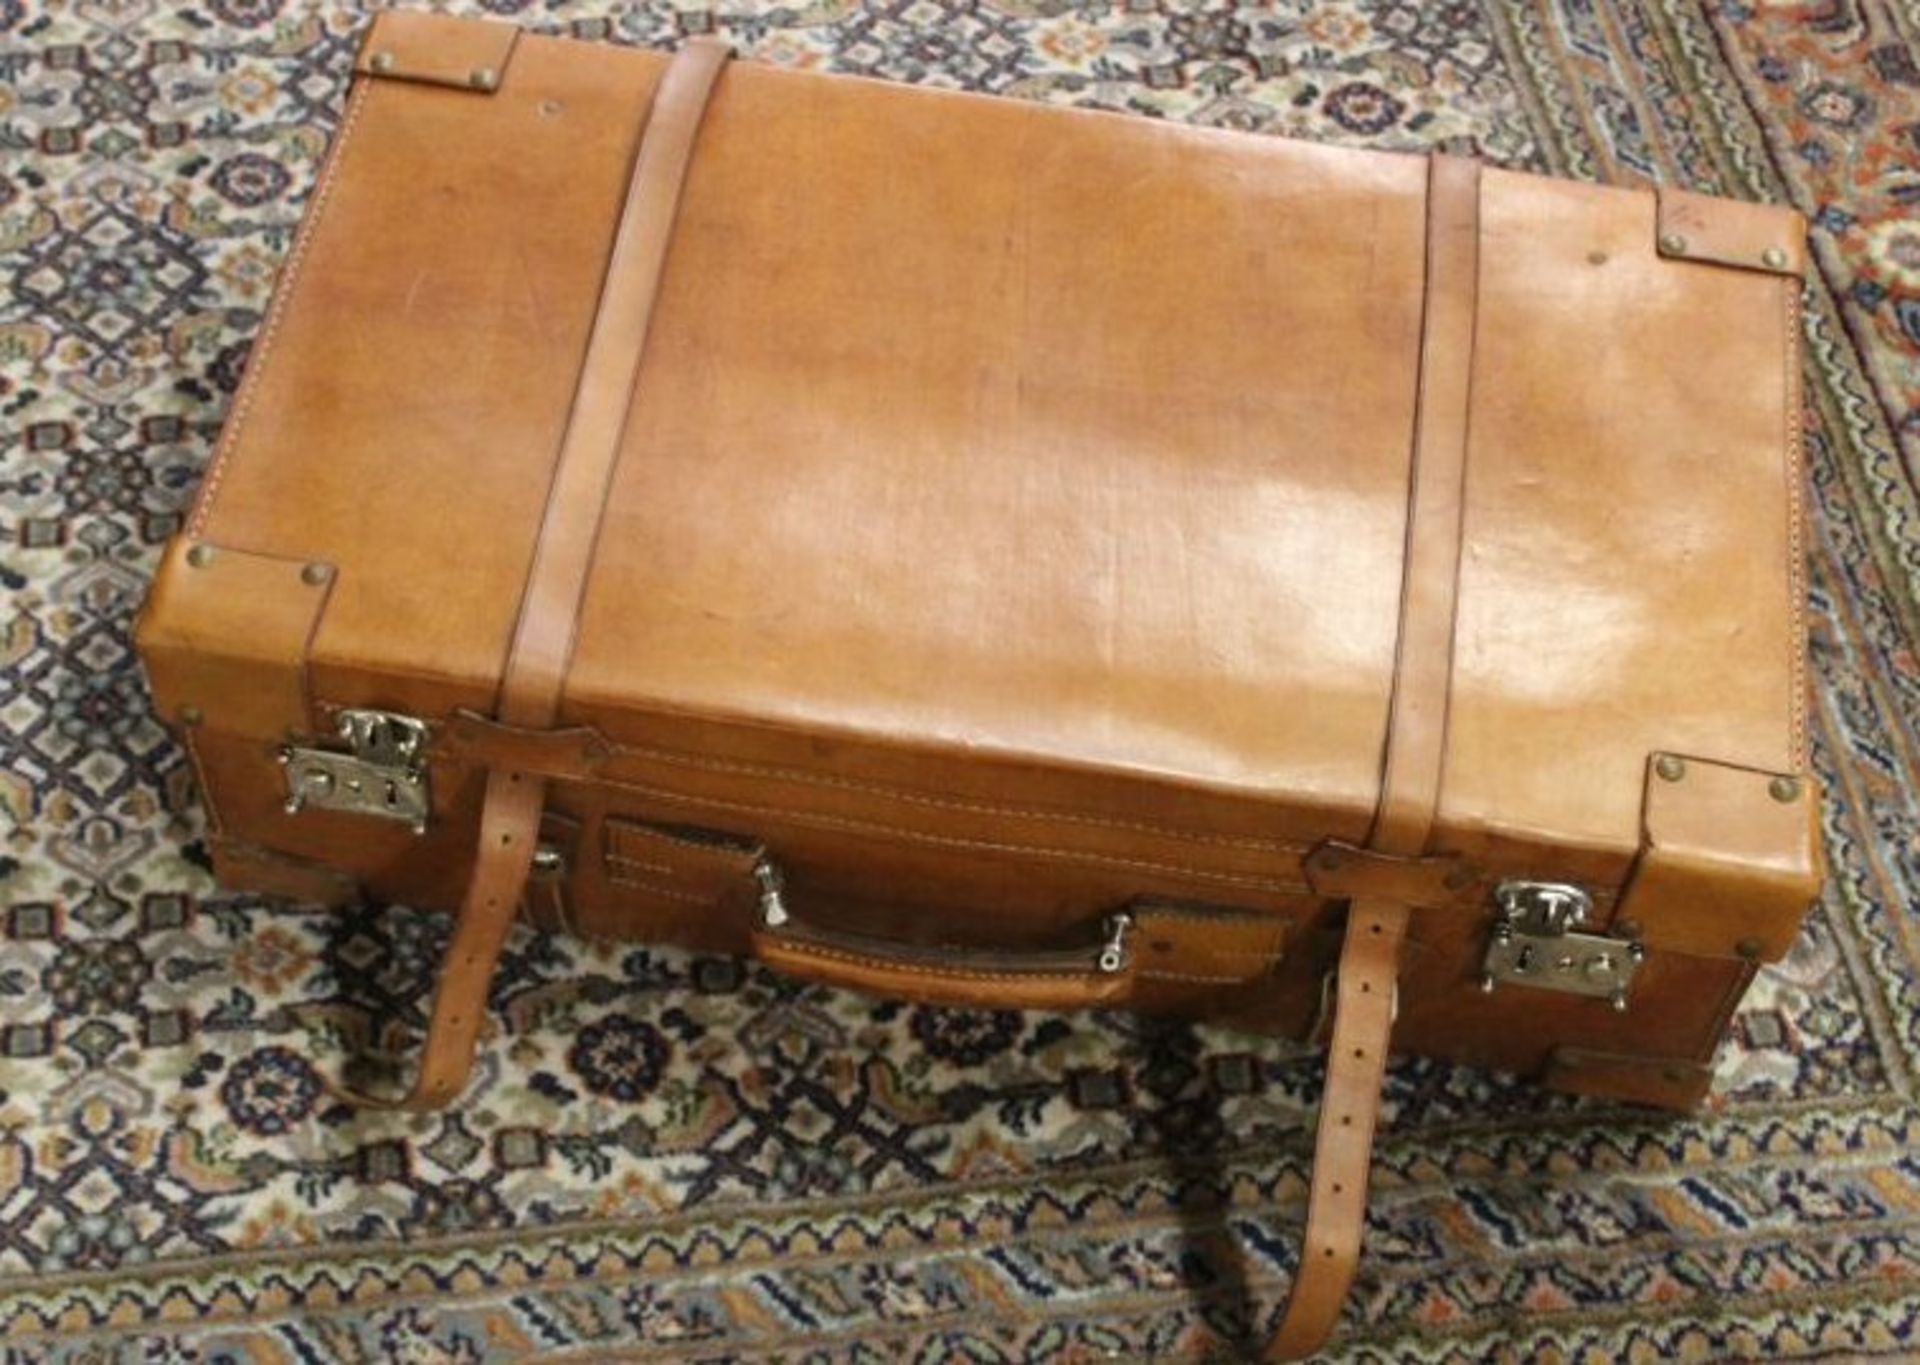 Leder-Koffer, älter, leichte Gebrauchsspuren, ca. H-21cm B-70cm